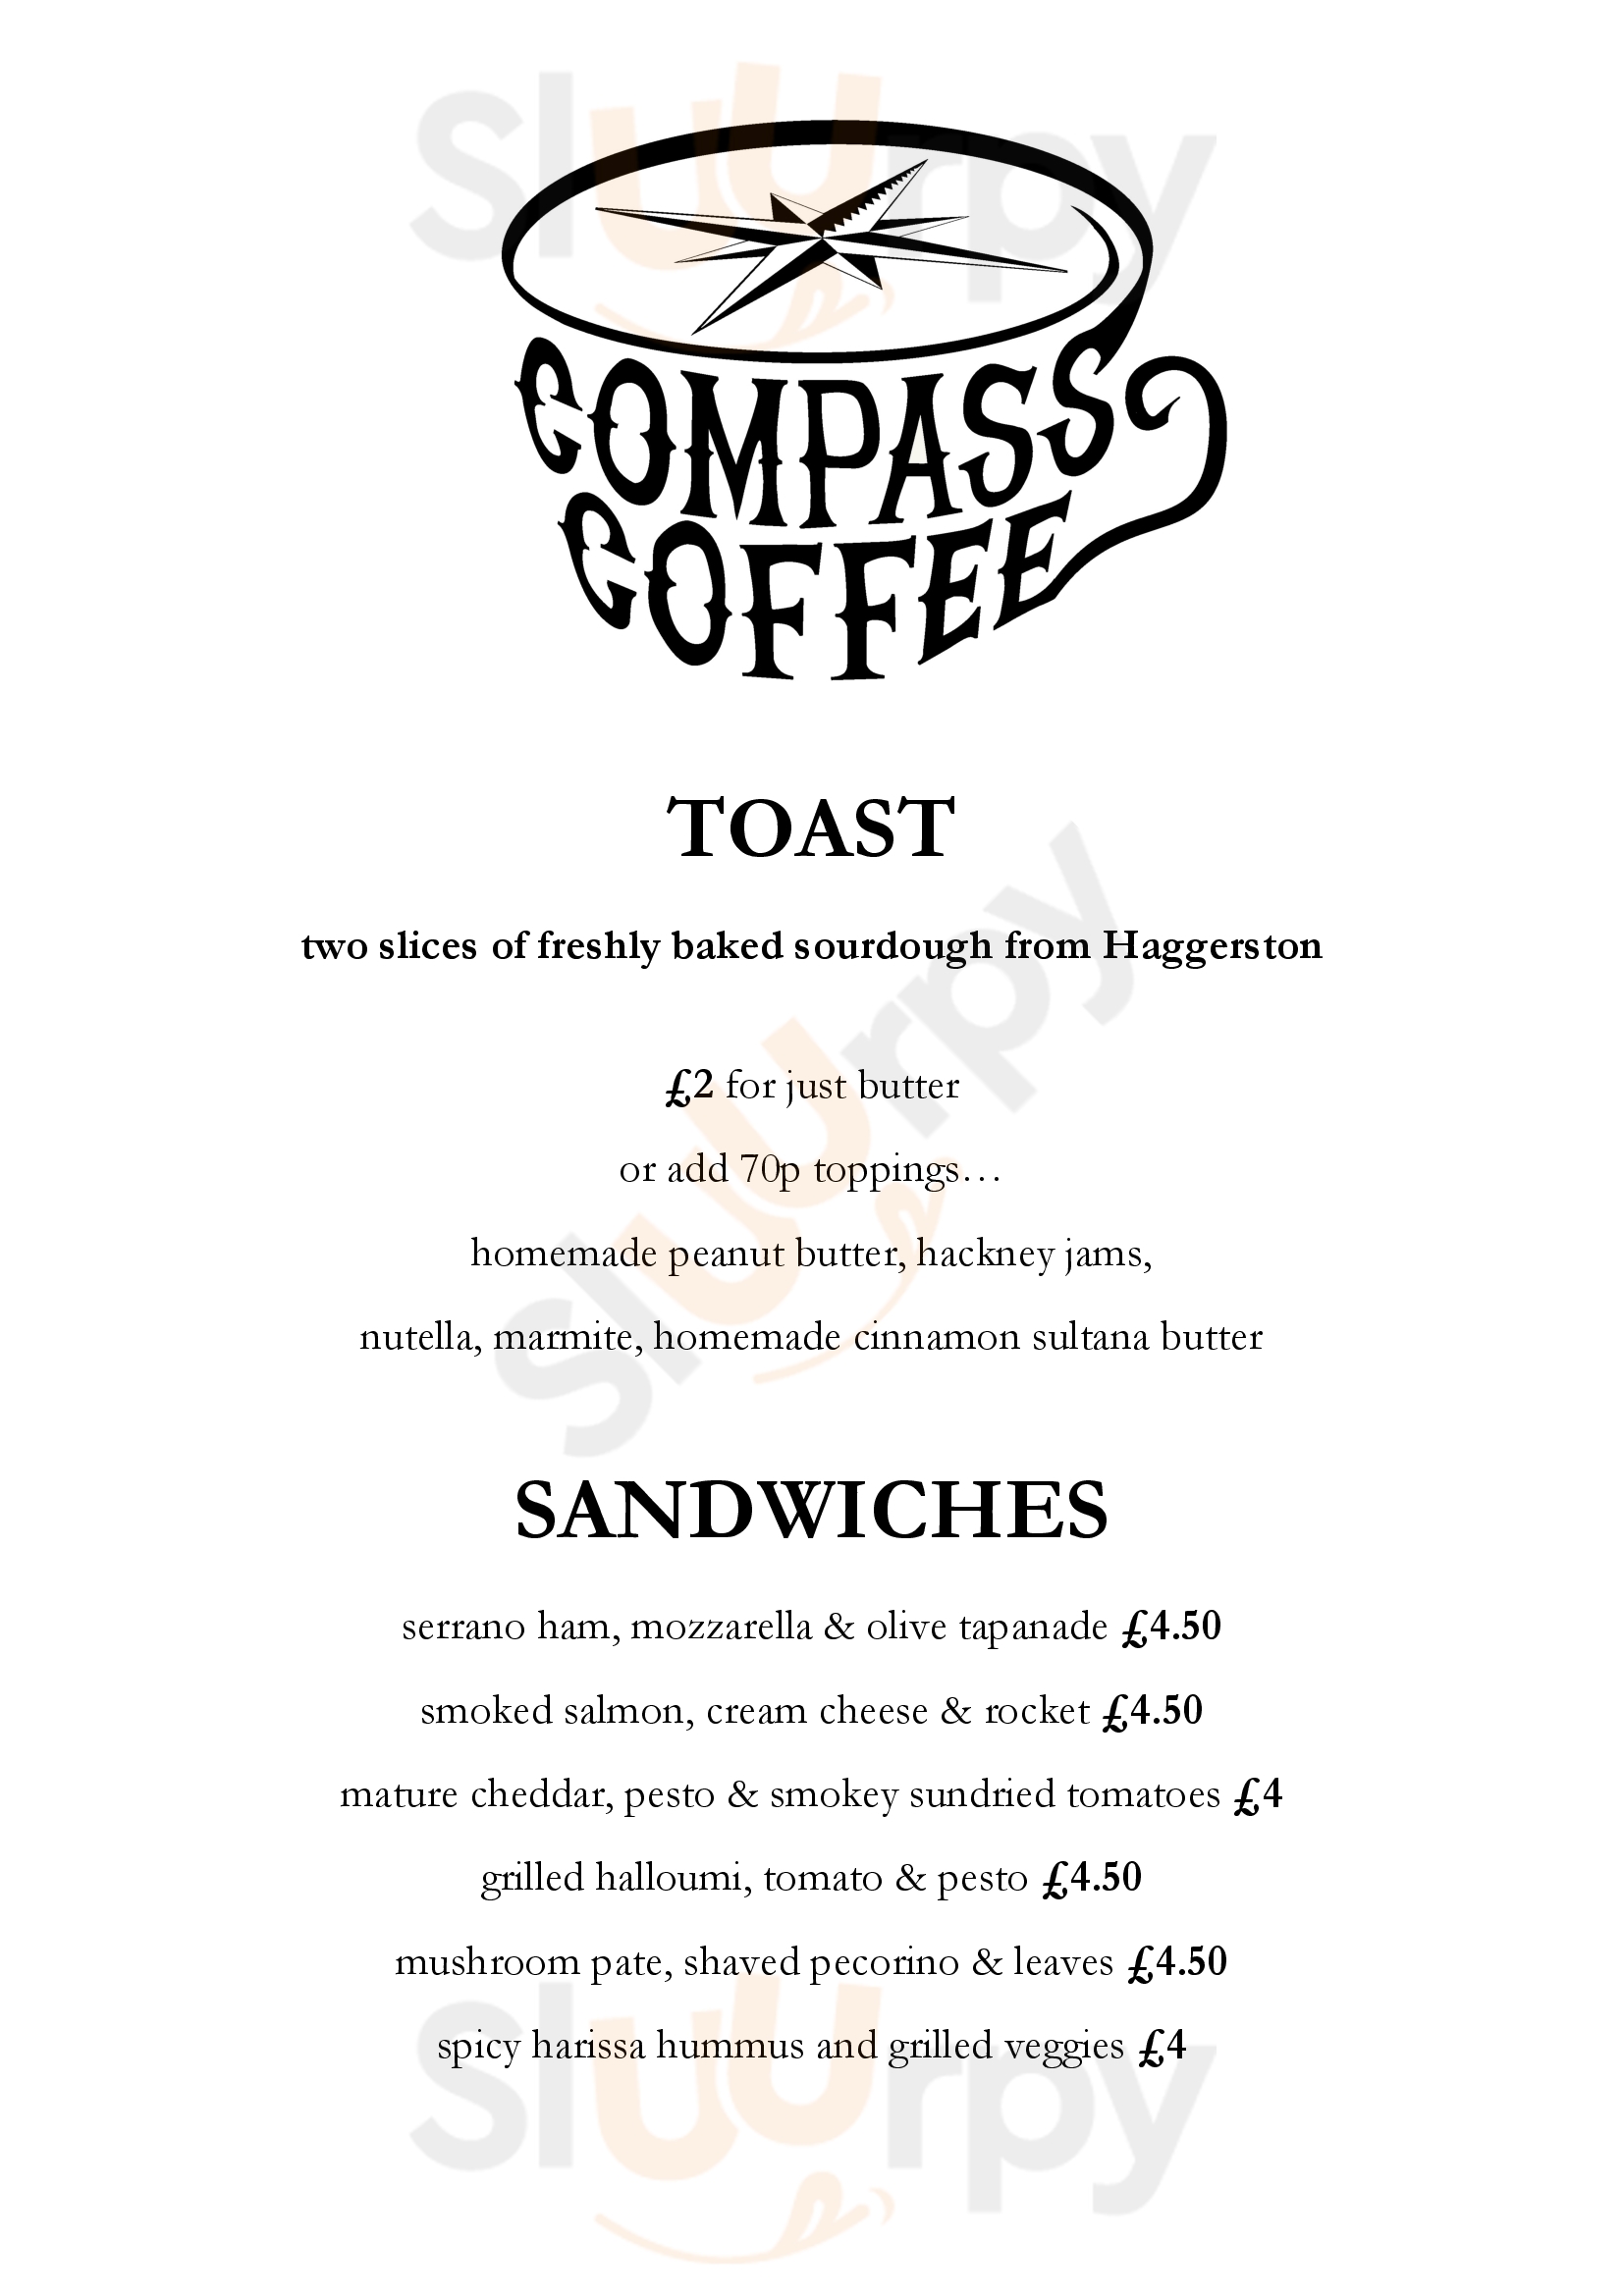 Compass Cafe London Menu - 1